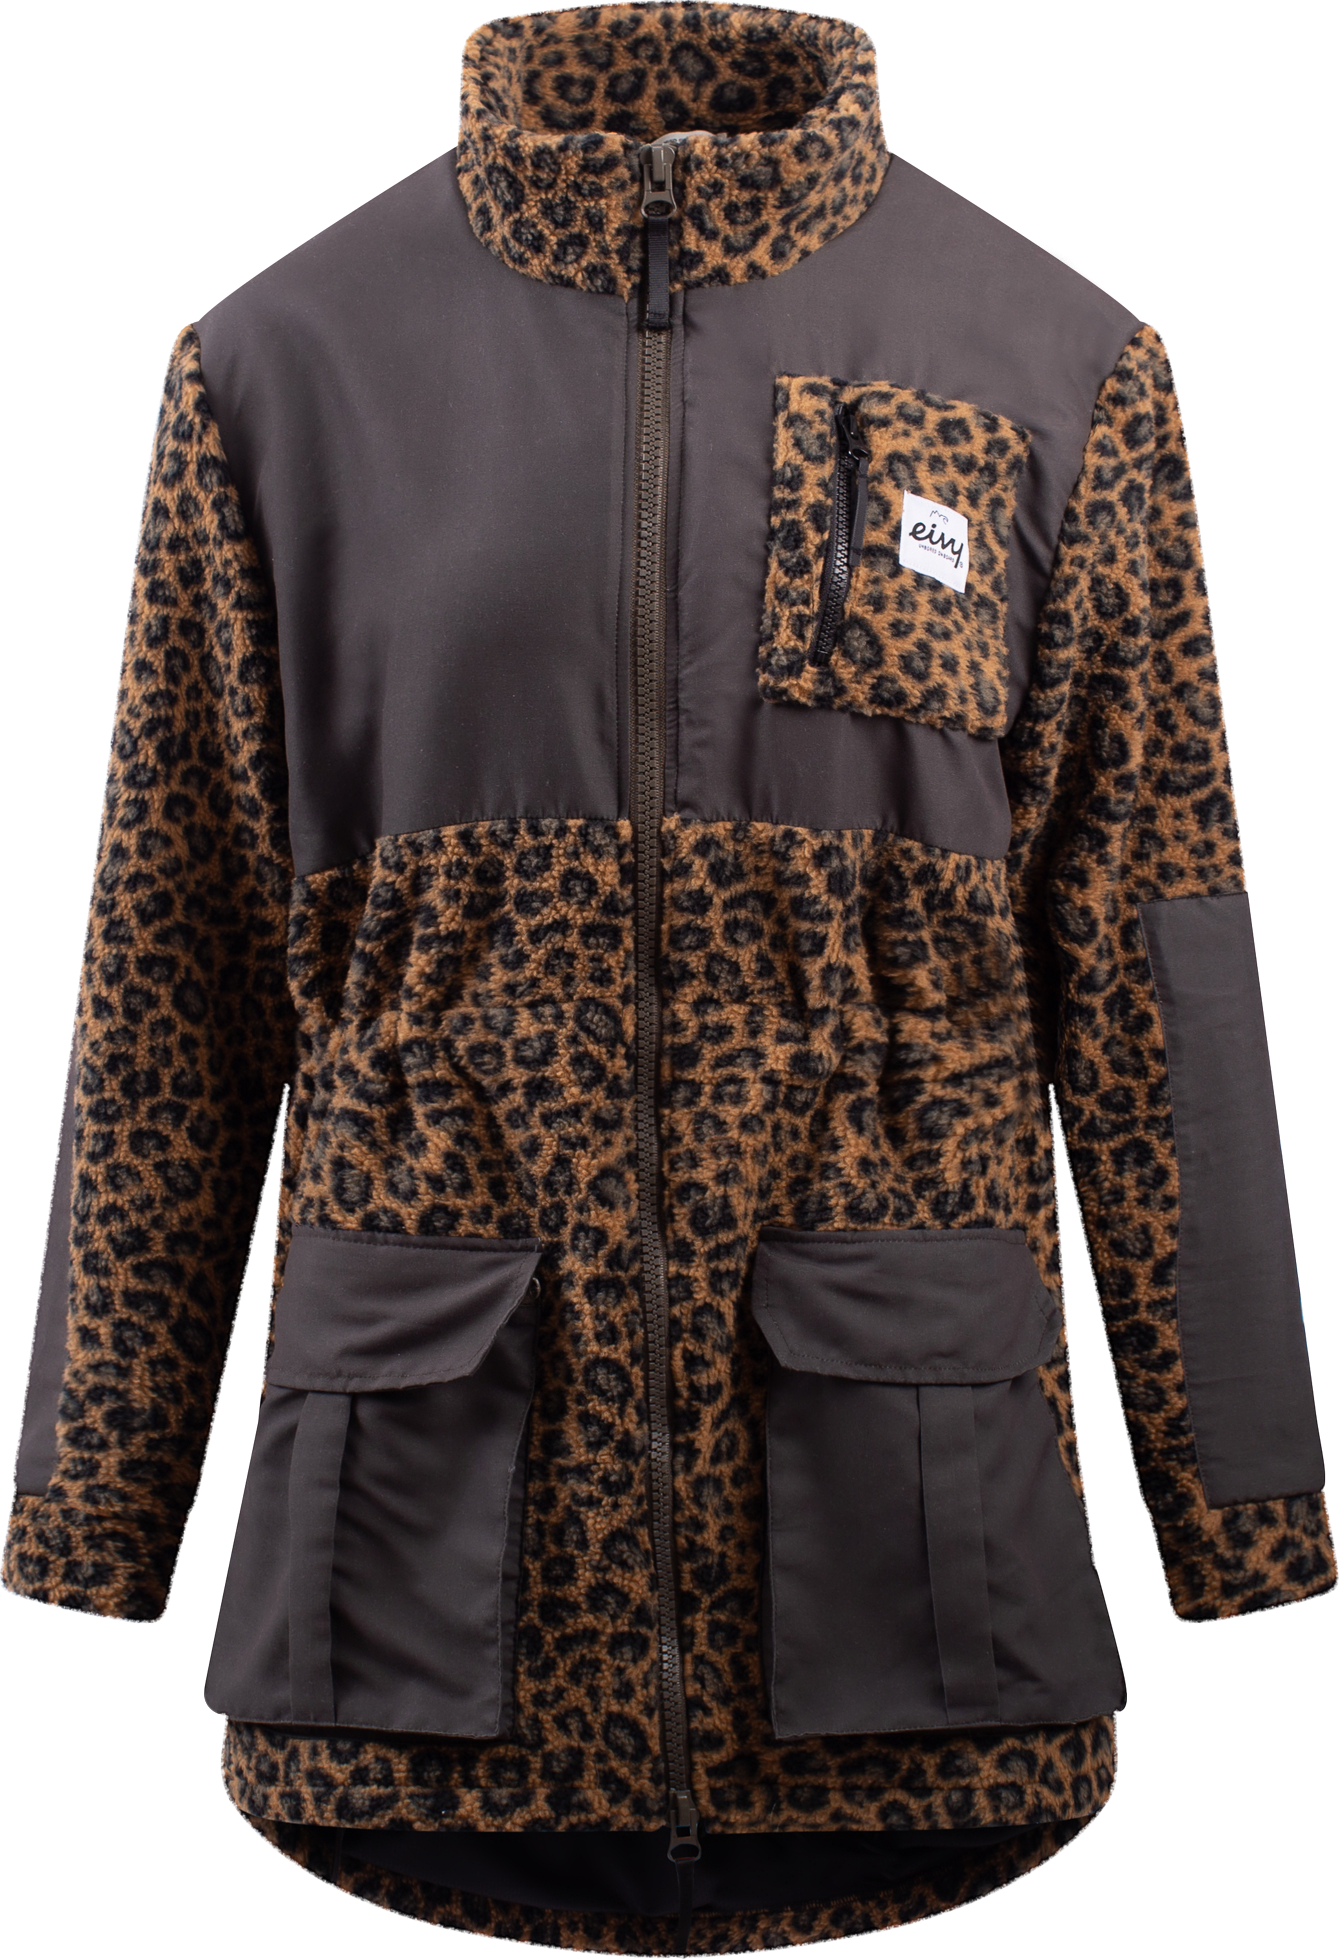 Eivy Women’s Field Sherpa Jacket Leopard